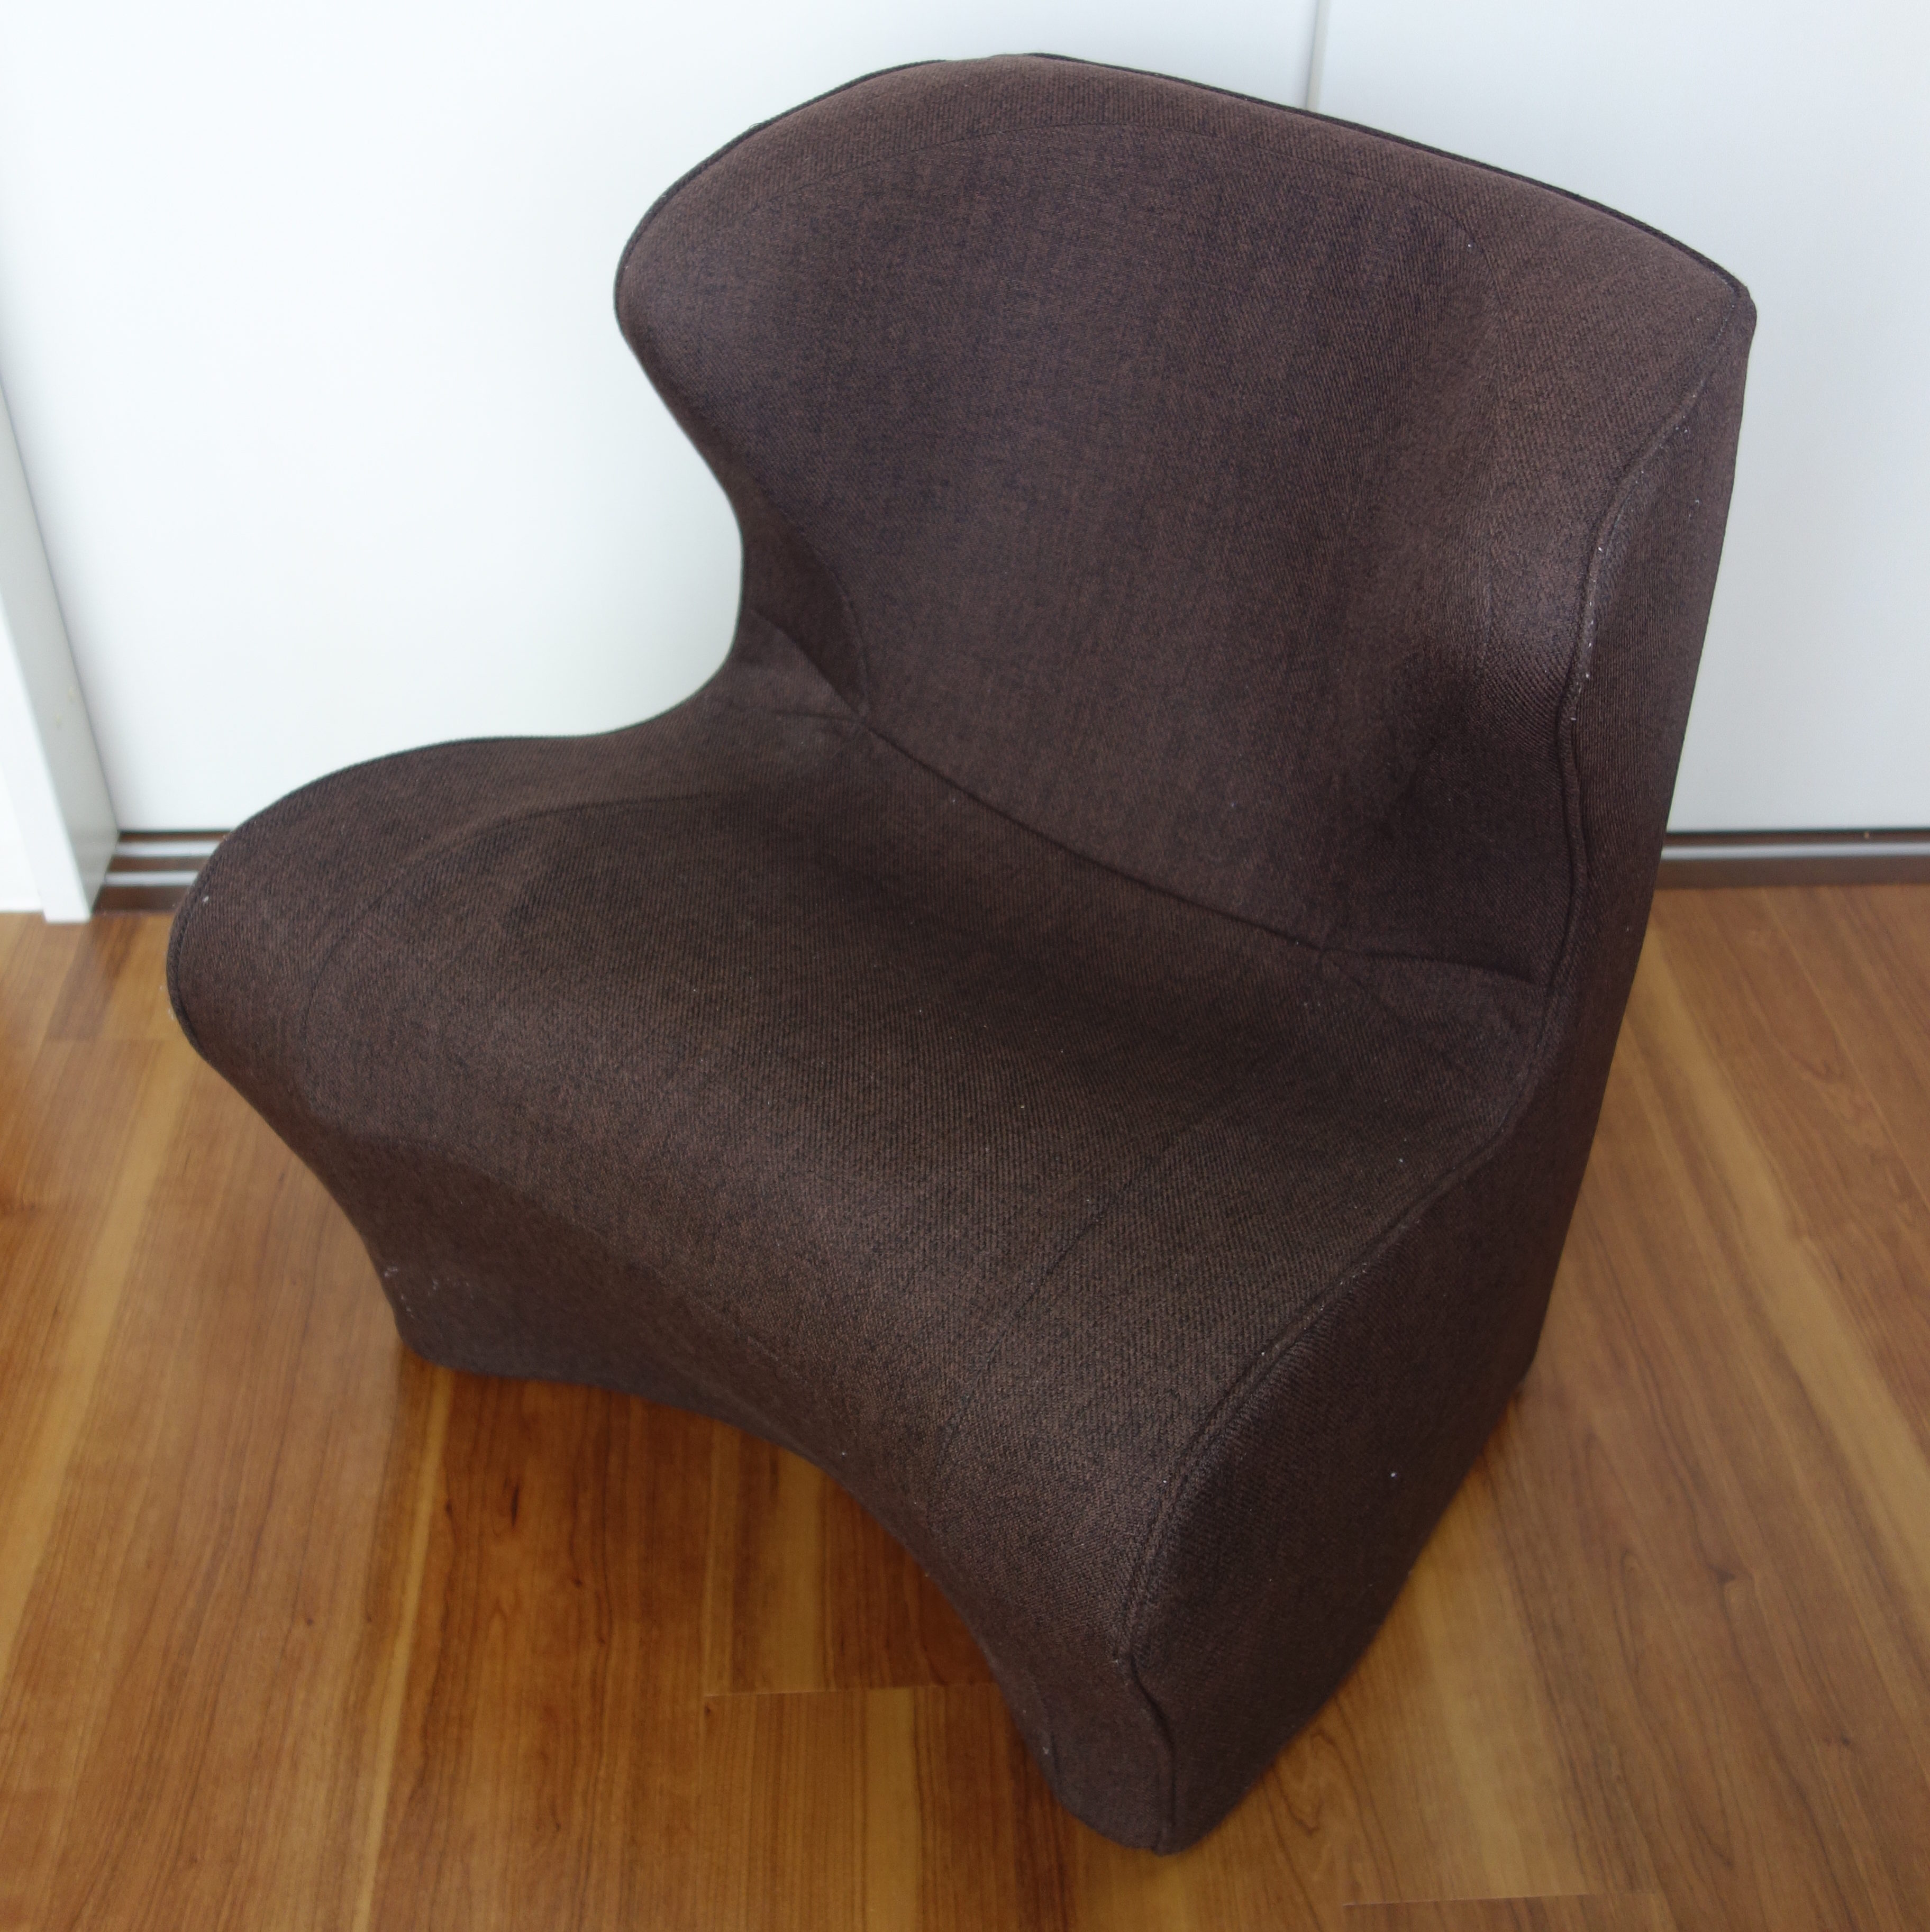 授乳用 口コミ Style Dr Chair Plus スタイルドクターチェアプラス 使用レビュー トトオのレレビュー